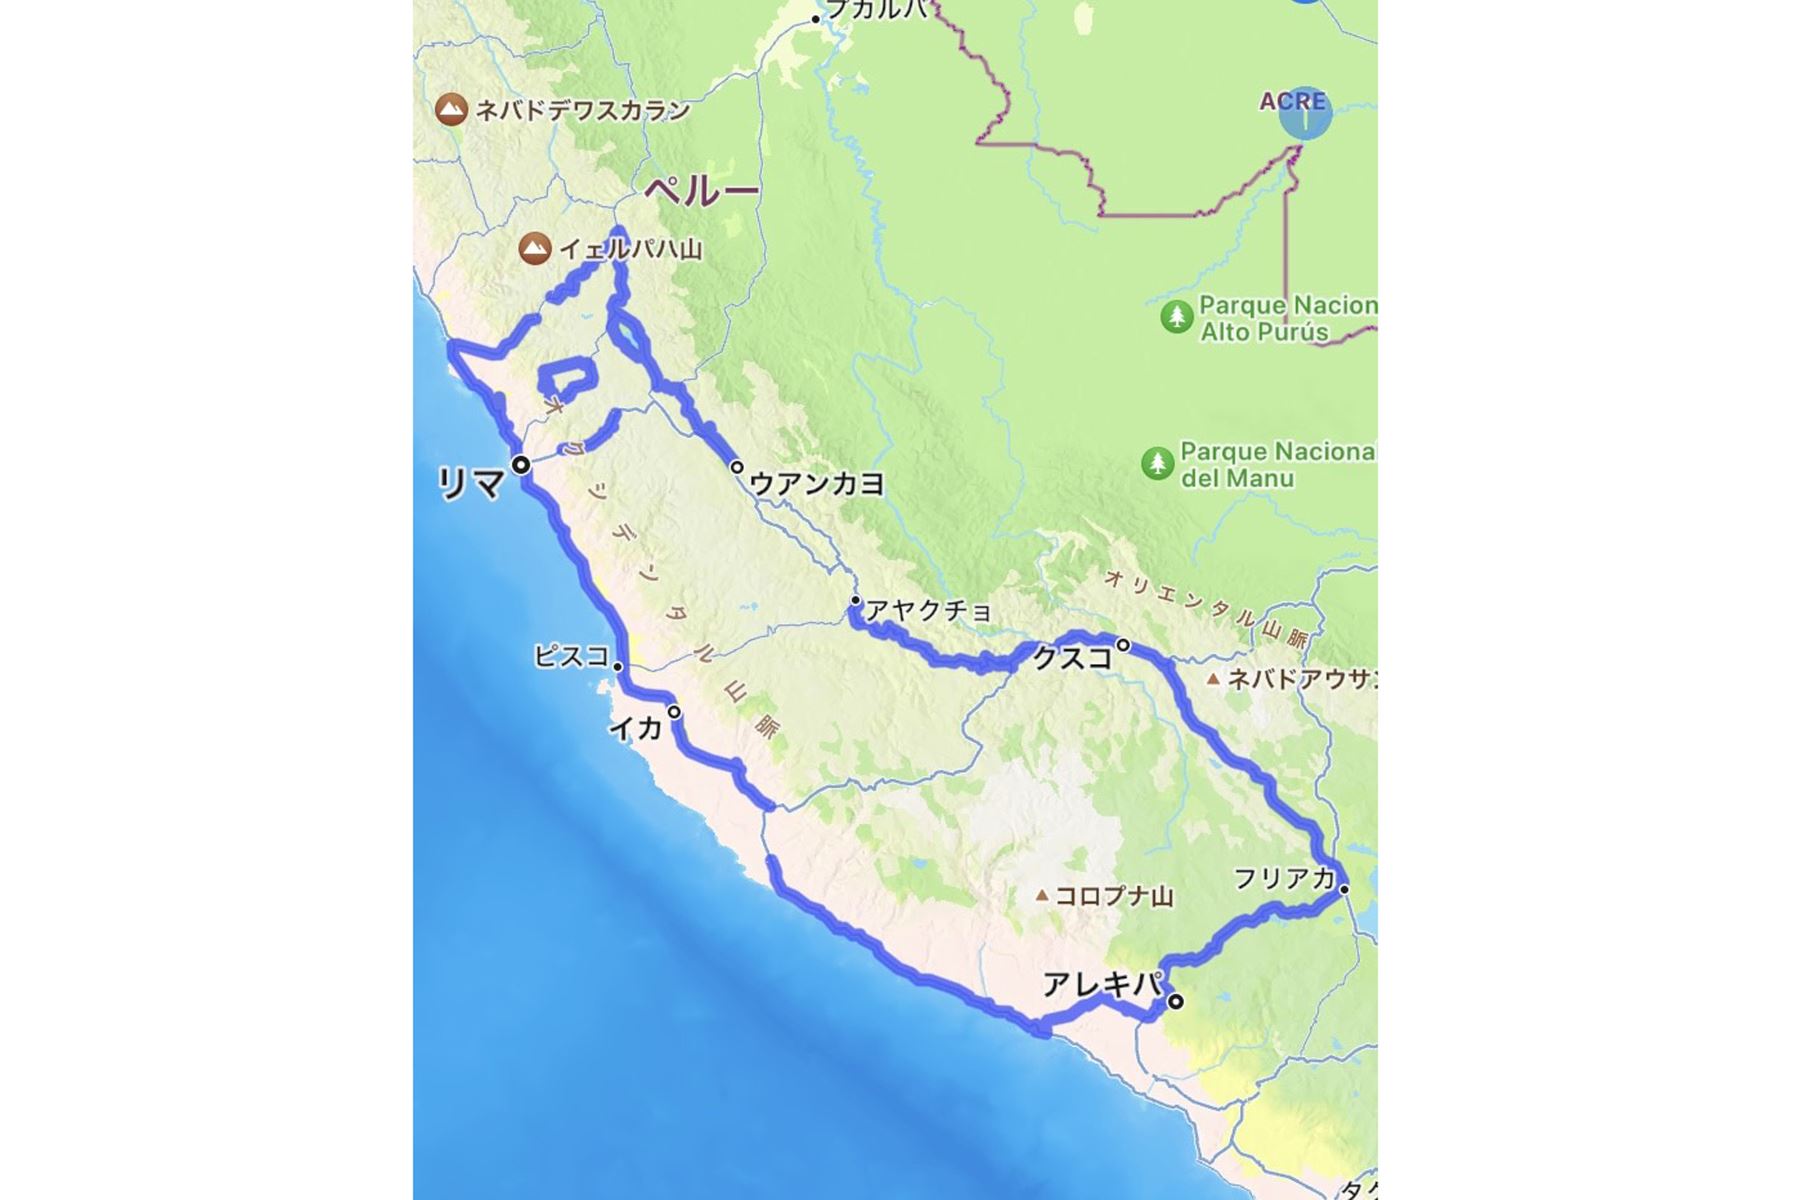 El corredor y artista japonés Naoki Shimizu siempre quiso ir a Perú para apreciar las míticas Líneas de Nazca y ahora acaba de concluir un recorrido de 4.000 kilómetros, de los cuales 1.000 han sido corriendo, formando una imagen aérea de una alpaca en honor a las famosas figuras del desierto.
Foto: EFE